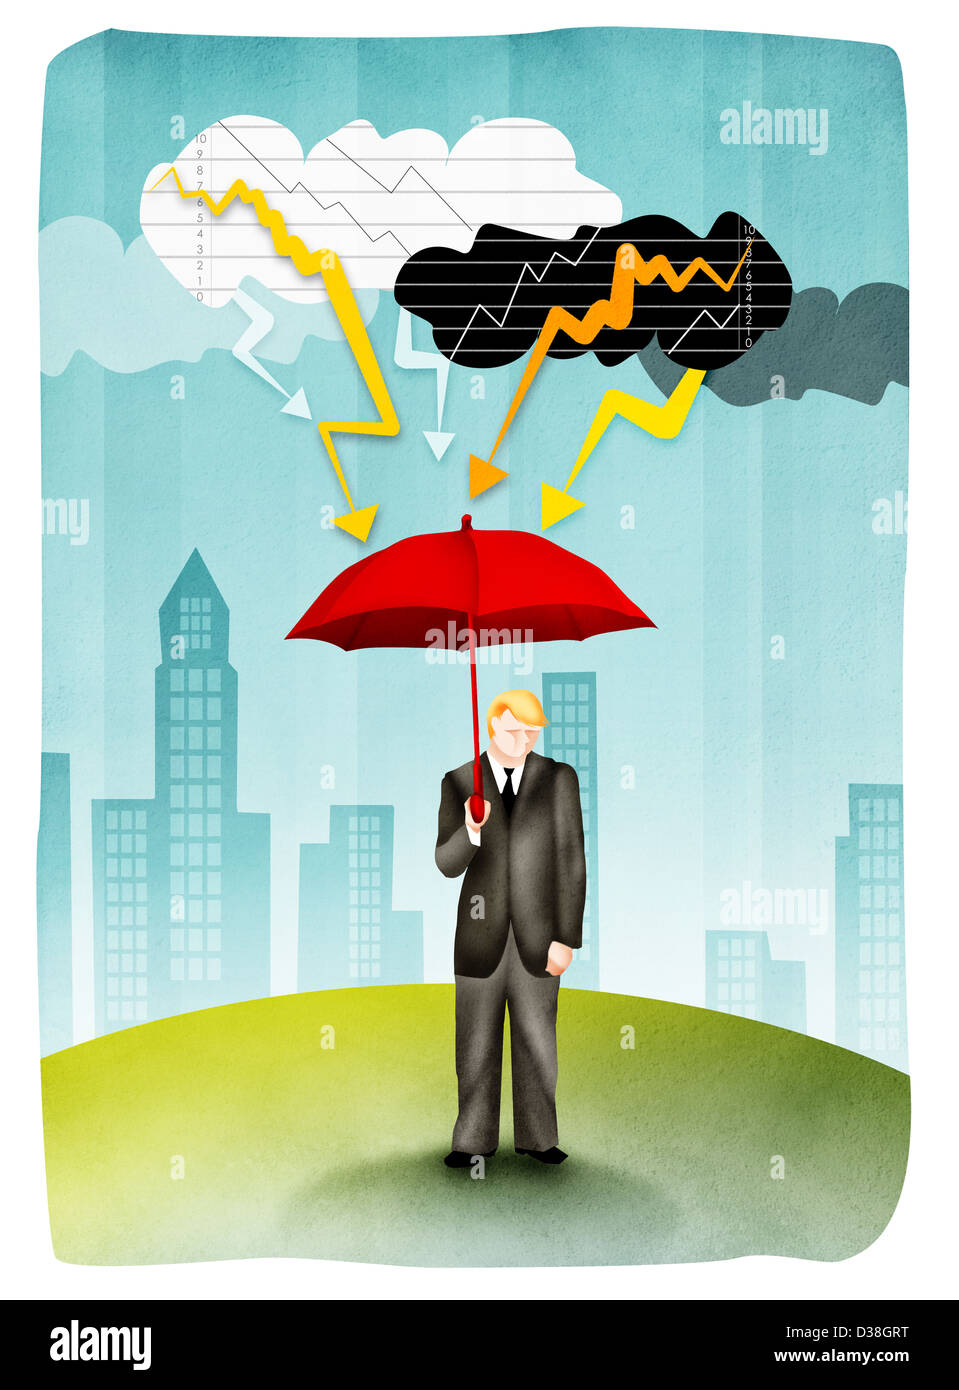 Man holding umbrella dans la tempête Banque D'Images